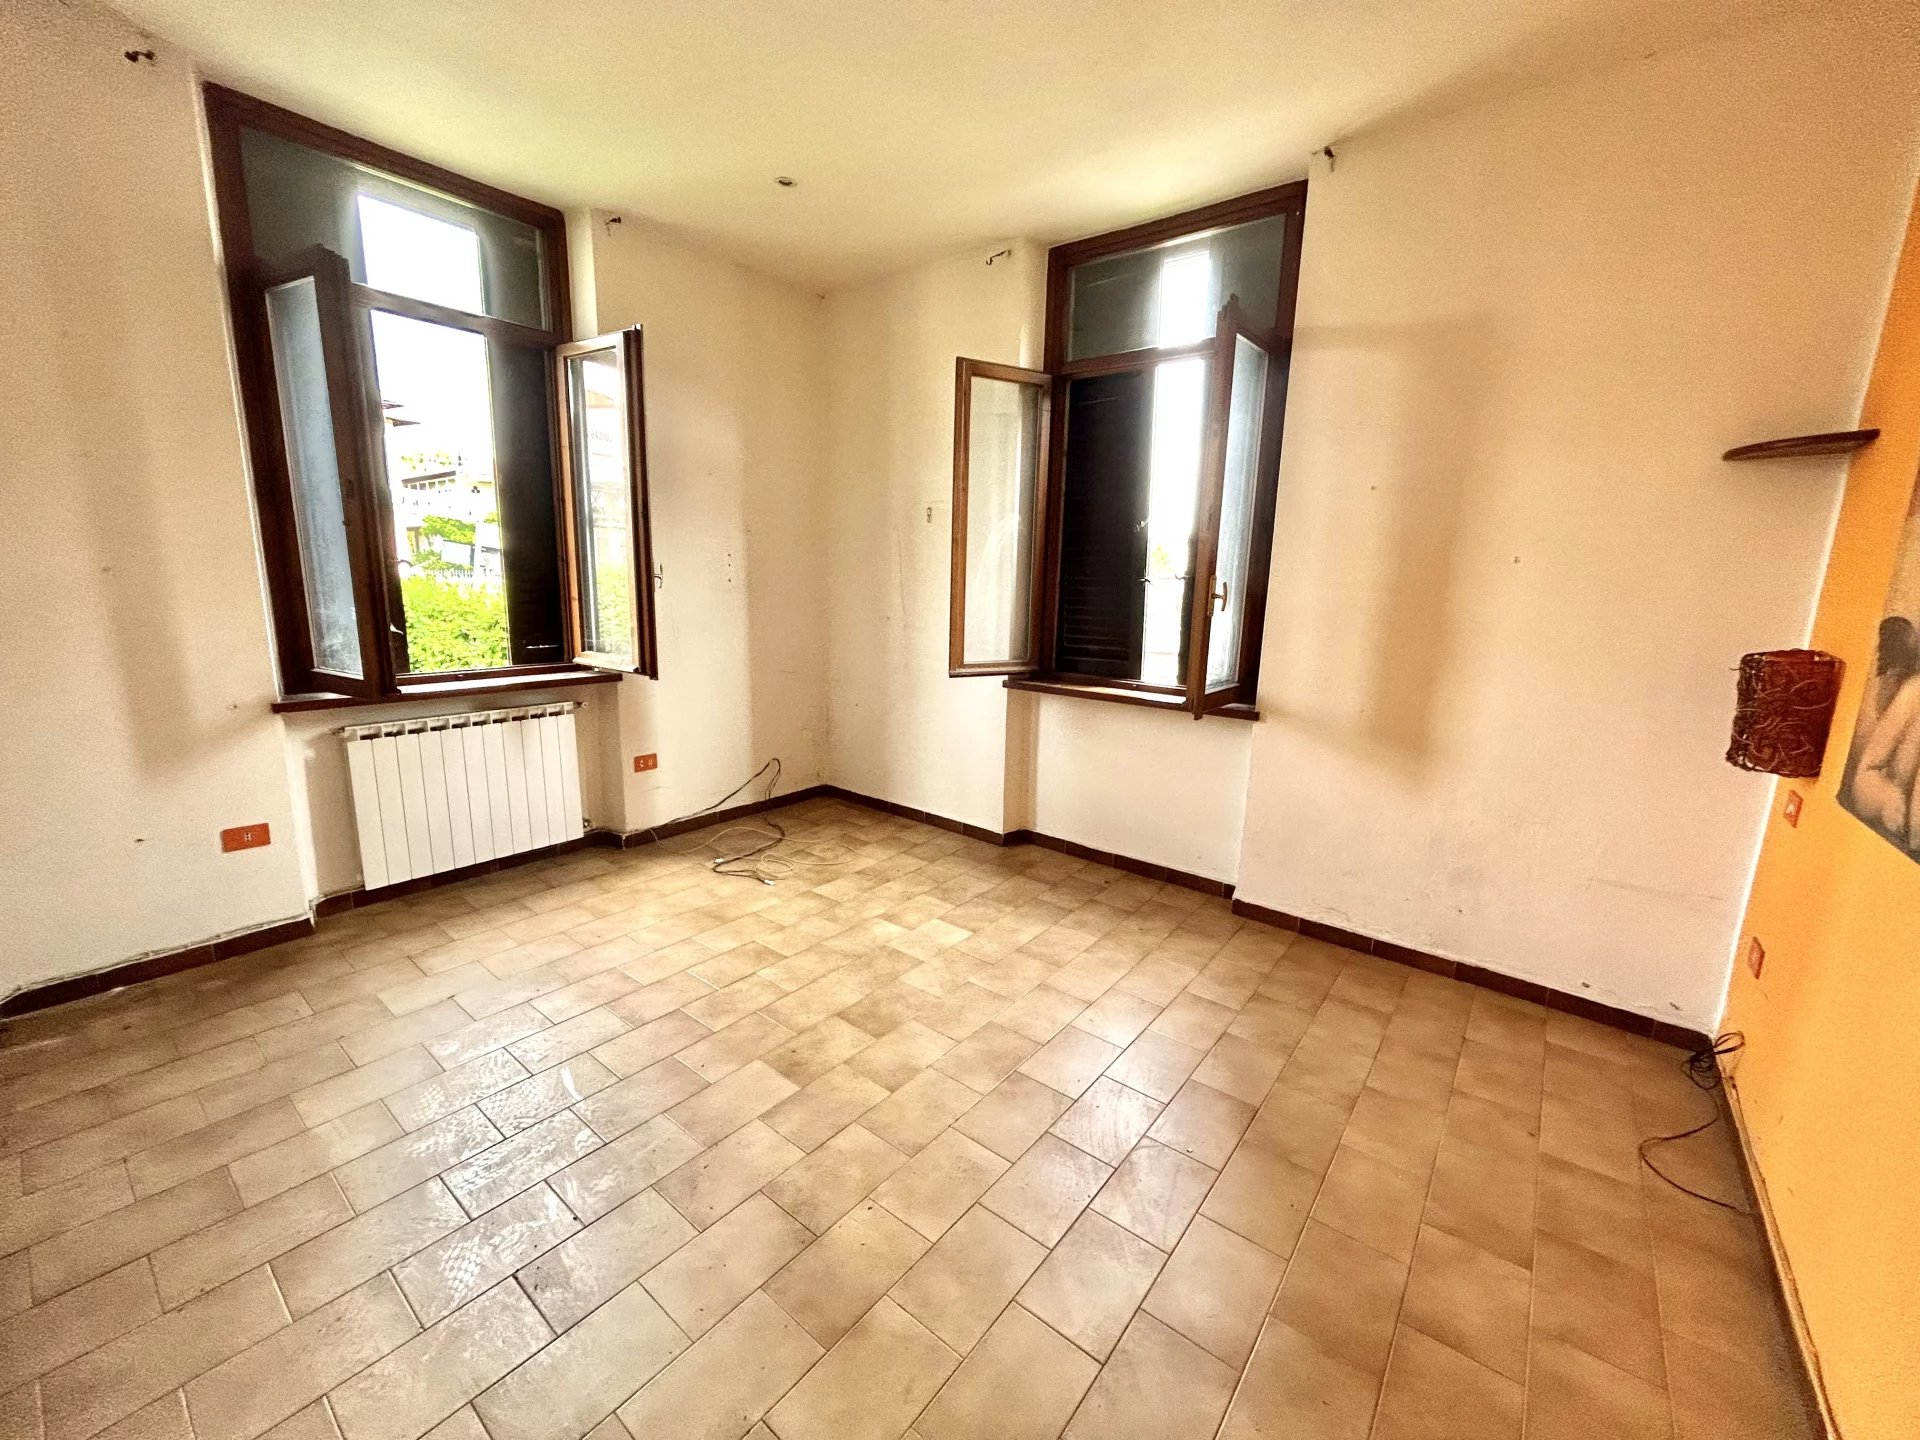 Sale Apartment - Luisago - Italy